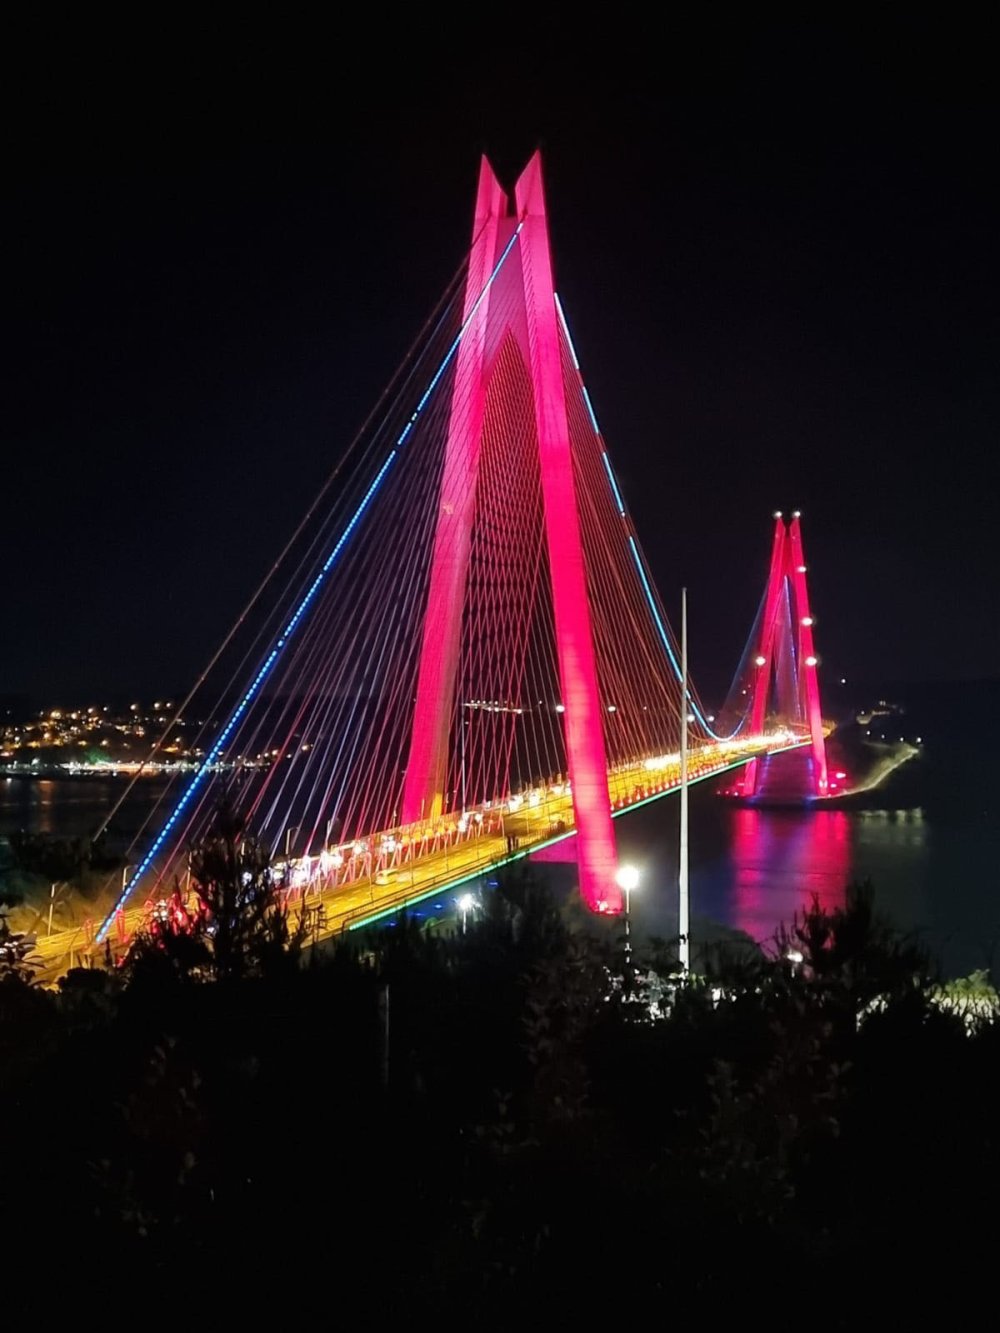 Köprüler Azerbaycan bayrağının renkleri ile ışıklandırıldı